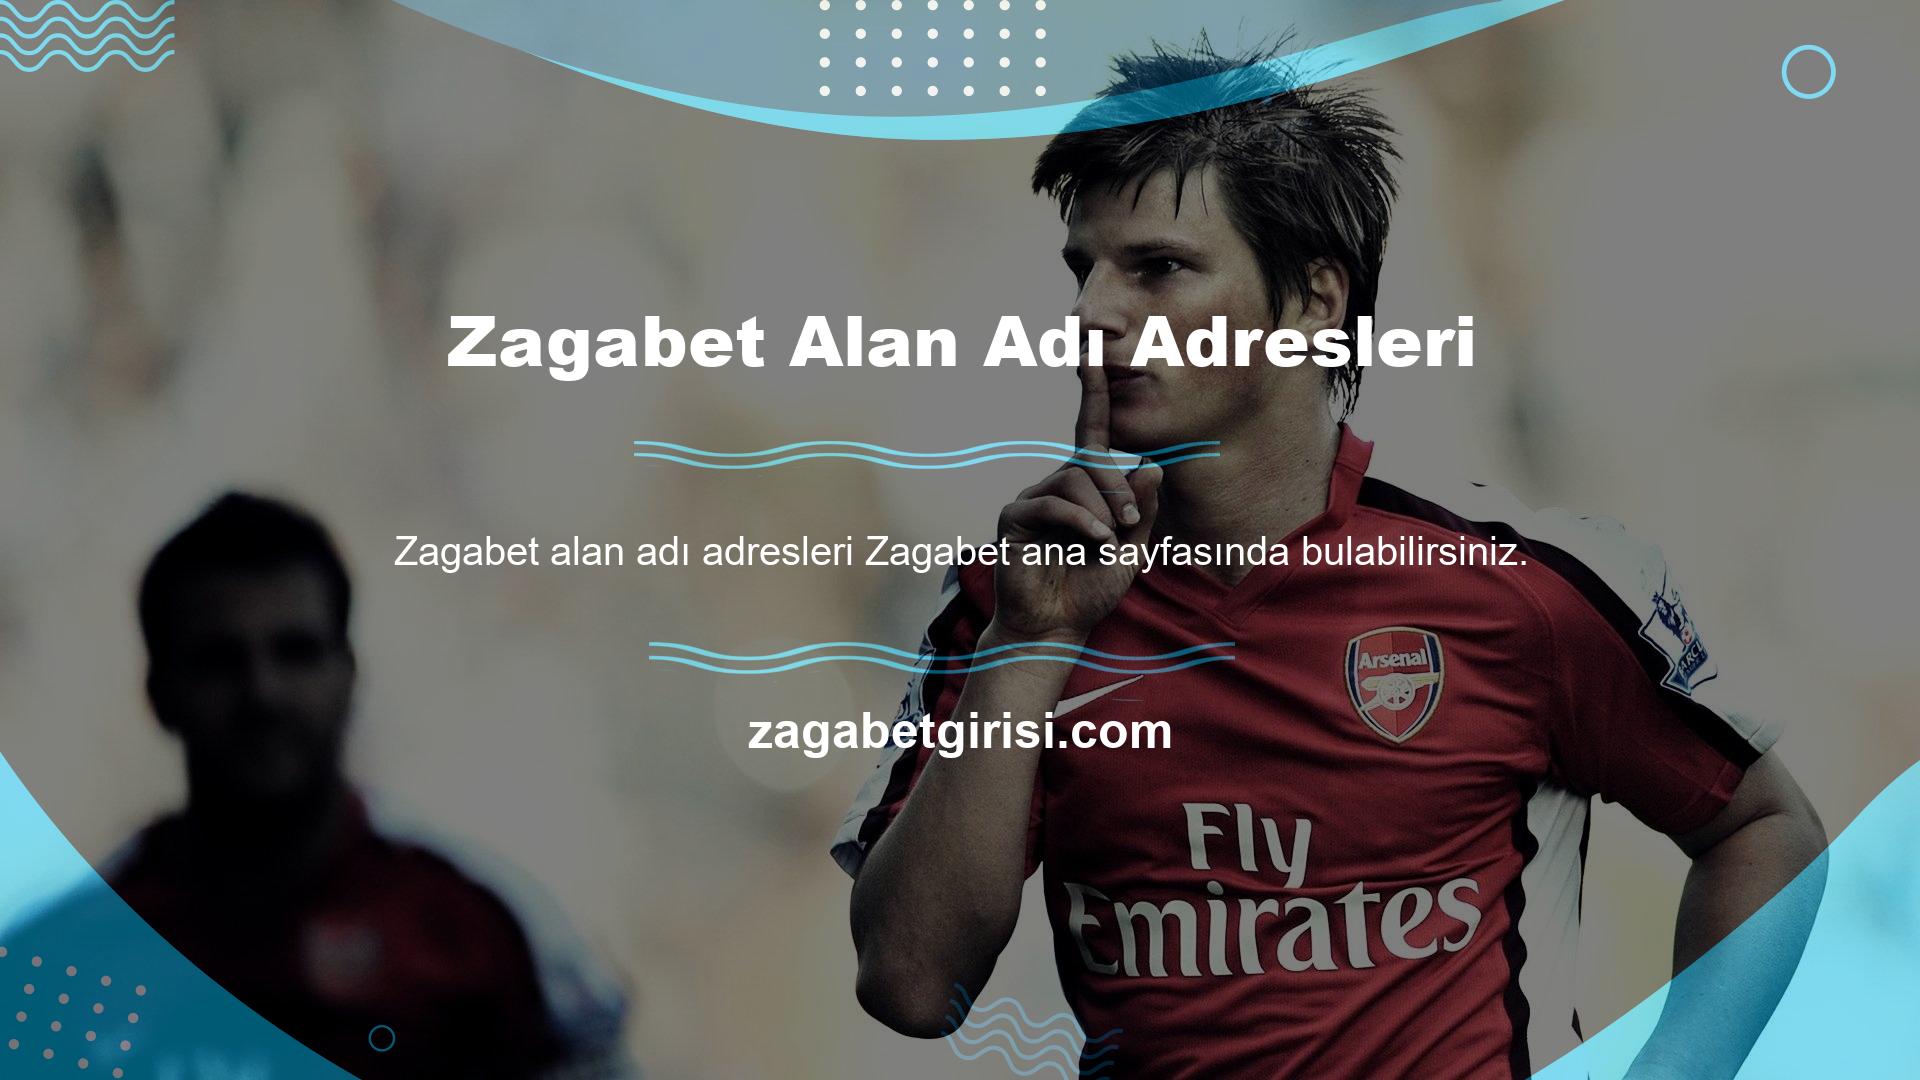 Sonsuza kadar sürekli güncellenen Zagabet oyun sitesi yeni güncelleme sonrası Zagabet alan adının güncel adresi ana sayfası üzerinden sizlerle güncellenmiştir